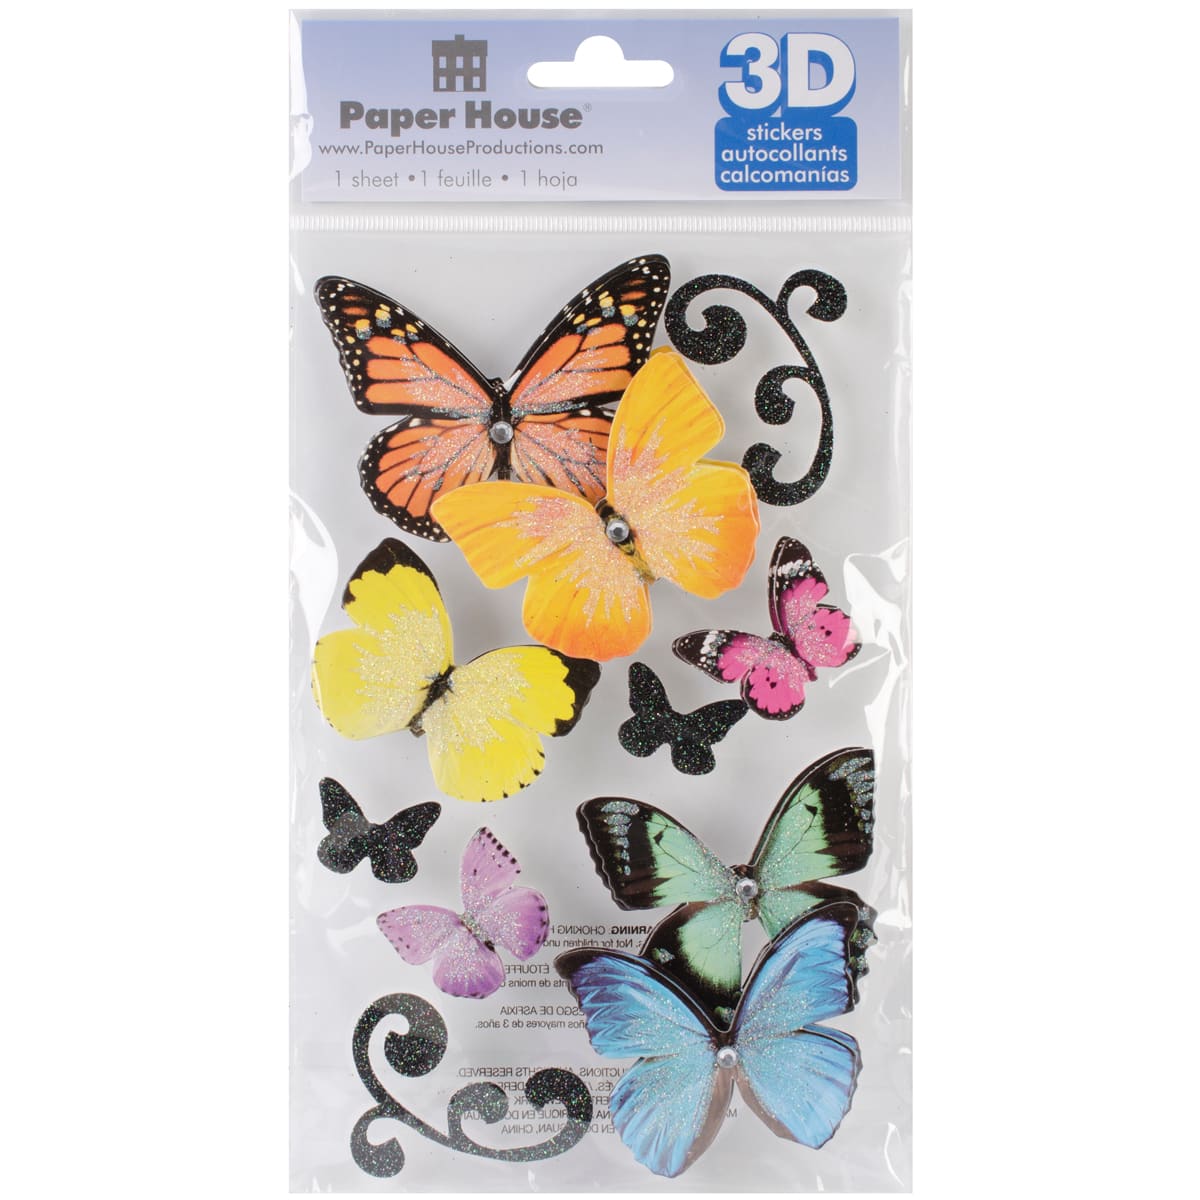 Paper House® Butterflies 3D Stickers